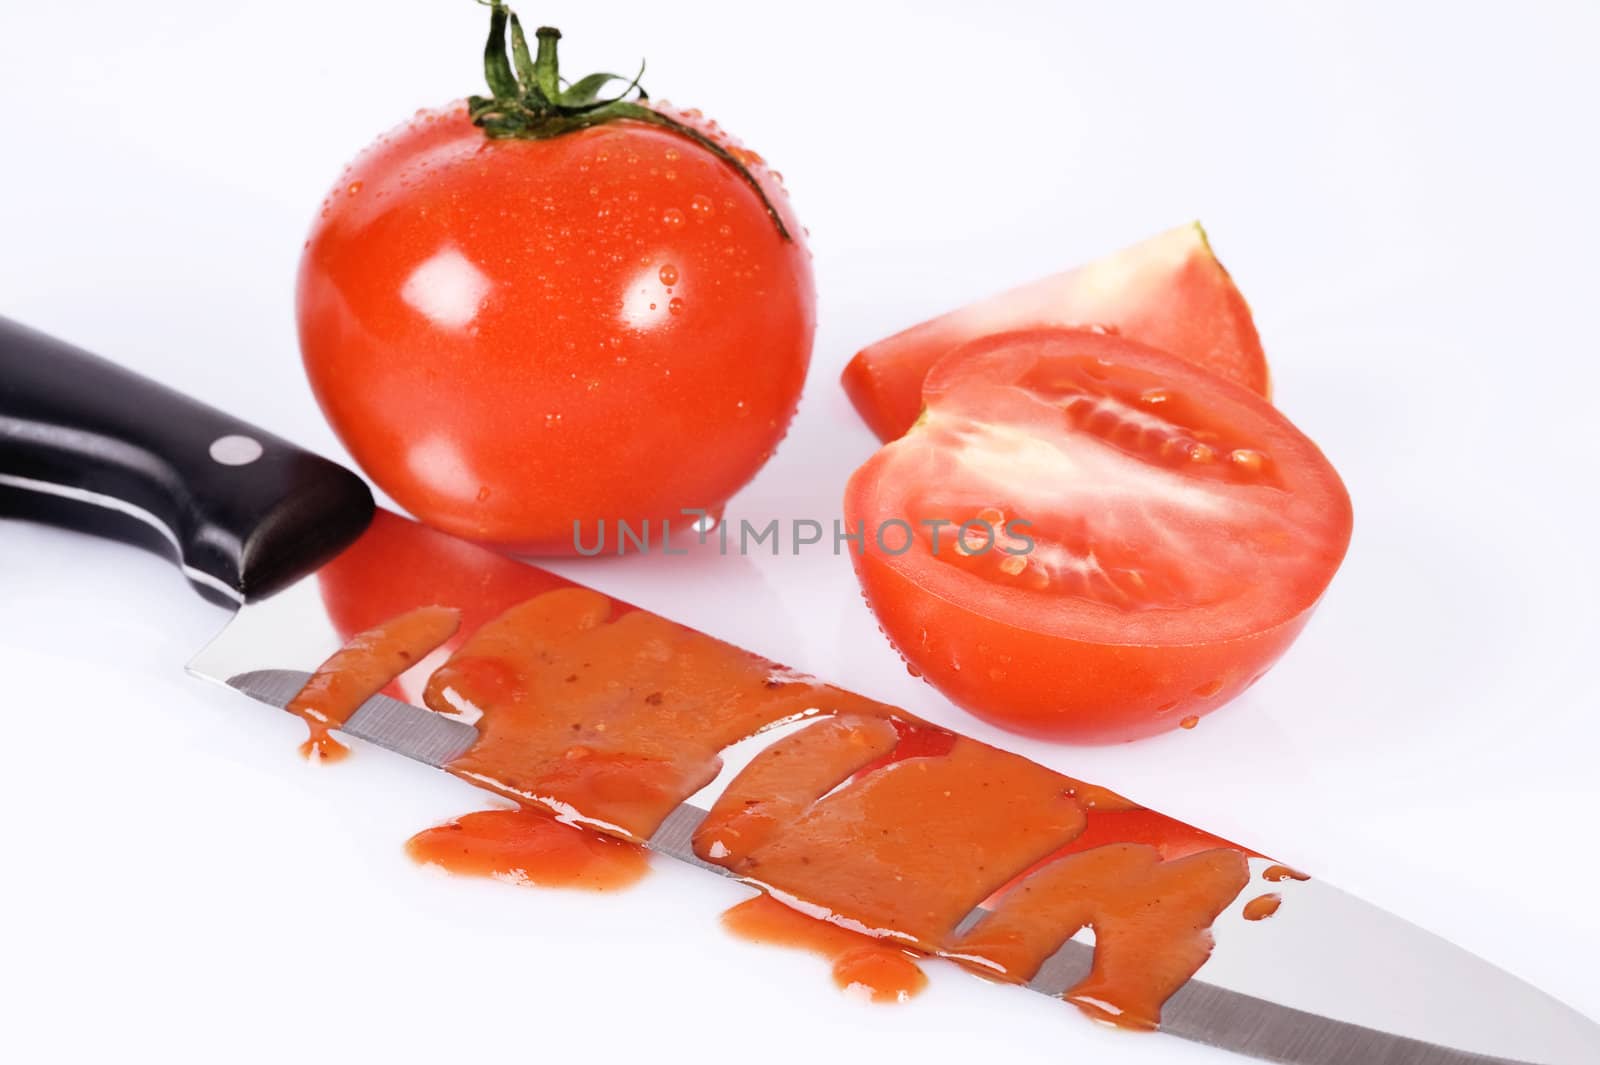 bloody ketchup knife by tiptoee